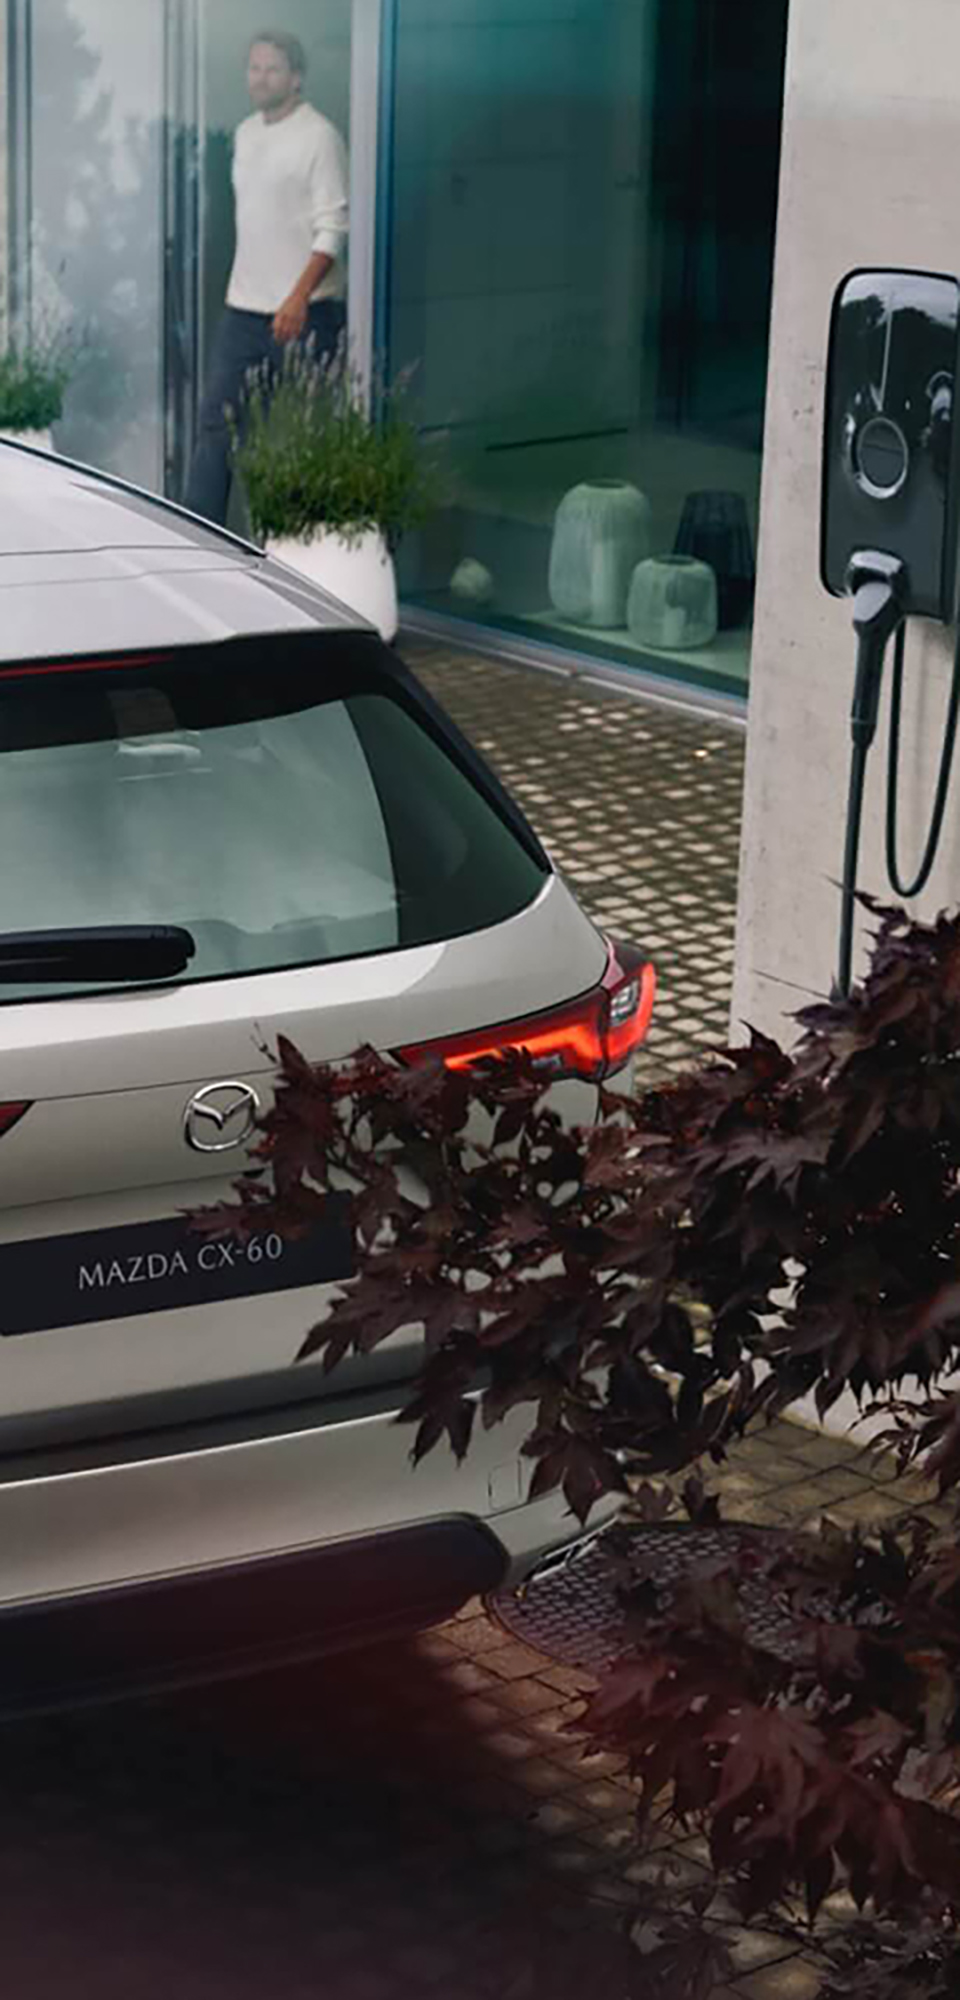 Naujasis visureigis „Mazda CX-60 Plug-In Hybrid“ – jis stovi šalia „Wallbox“ įkrovimo stotelės namams.